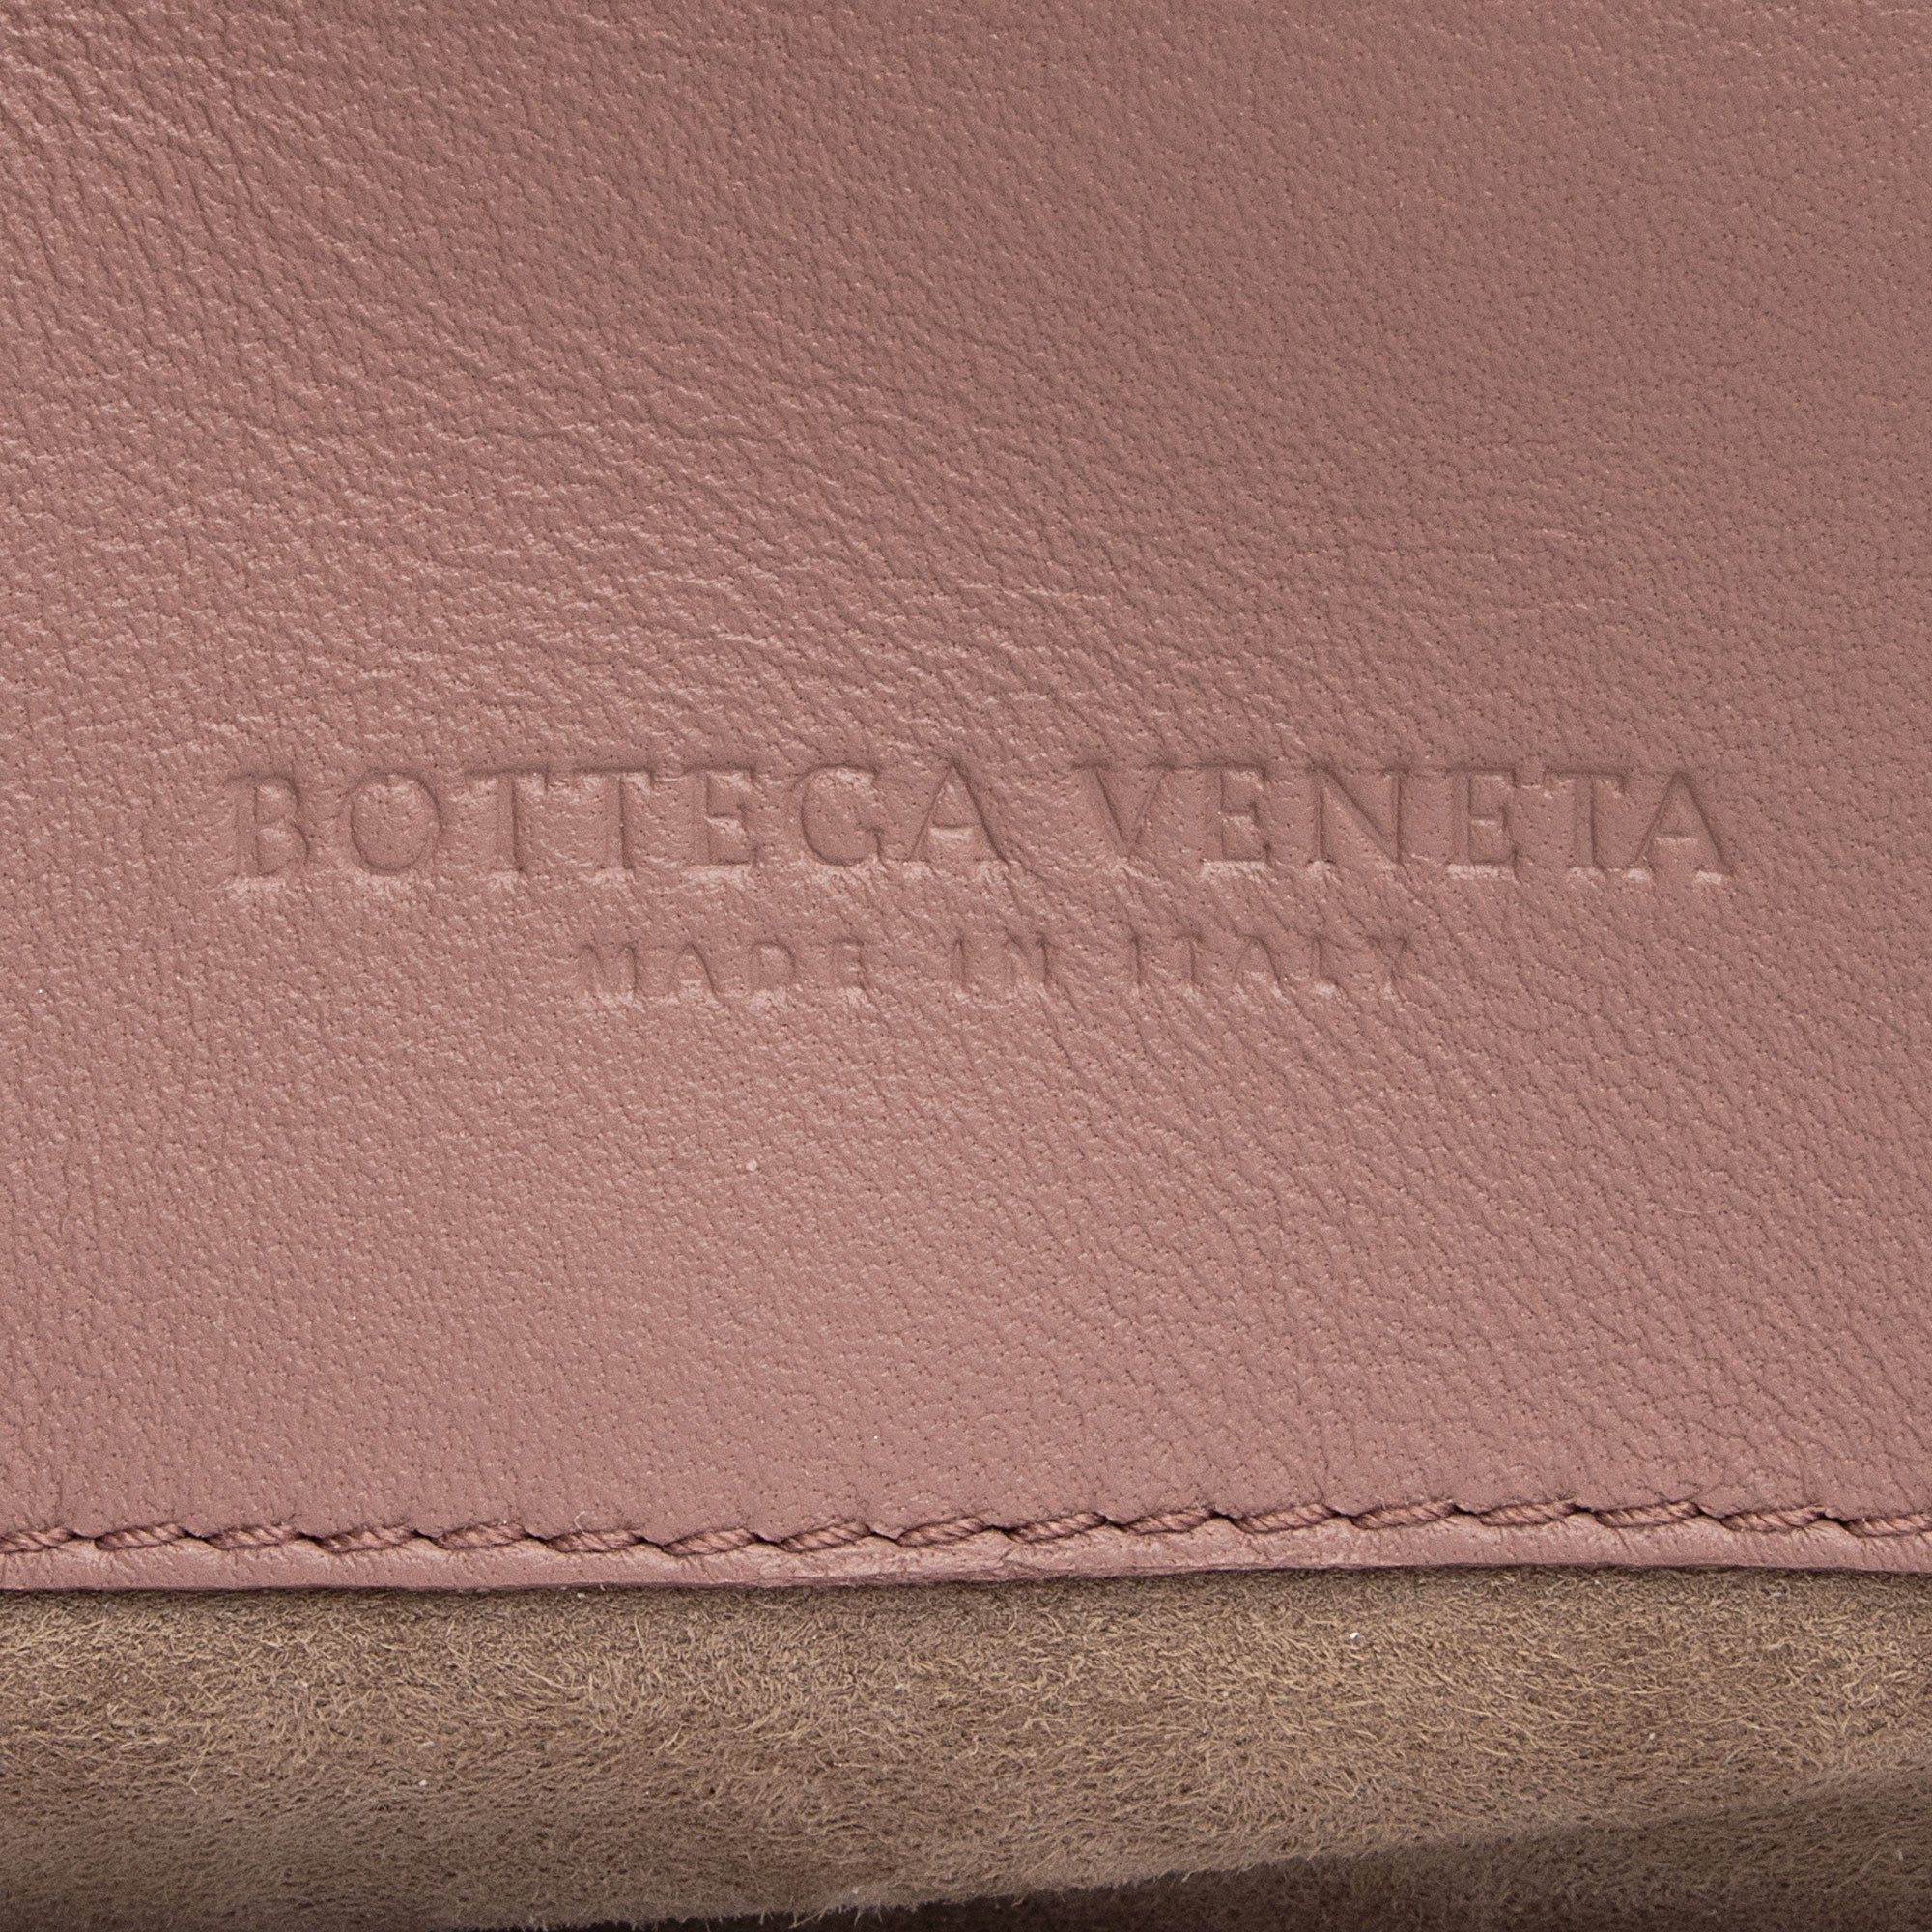 Bottega Veneta Intrecciato Nappa Leather BV Luna Crossbody Bag